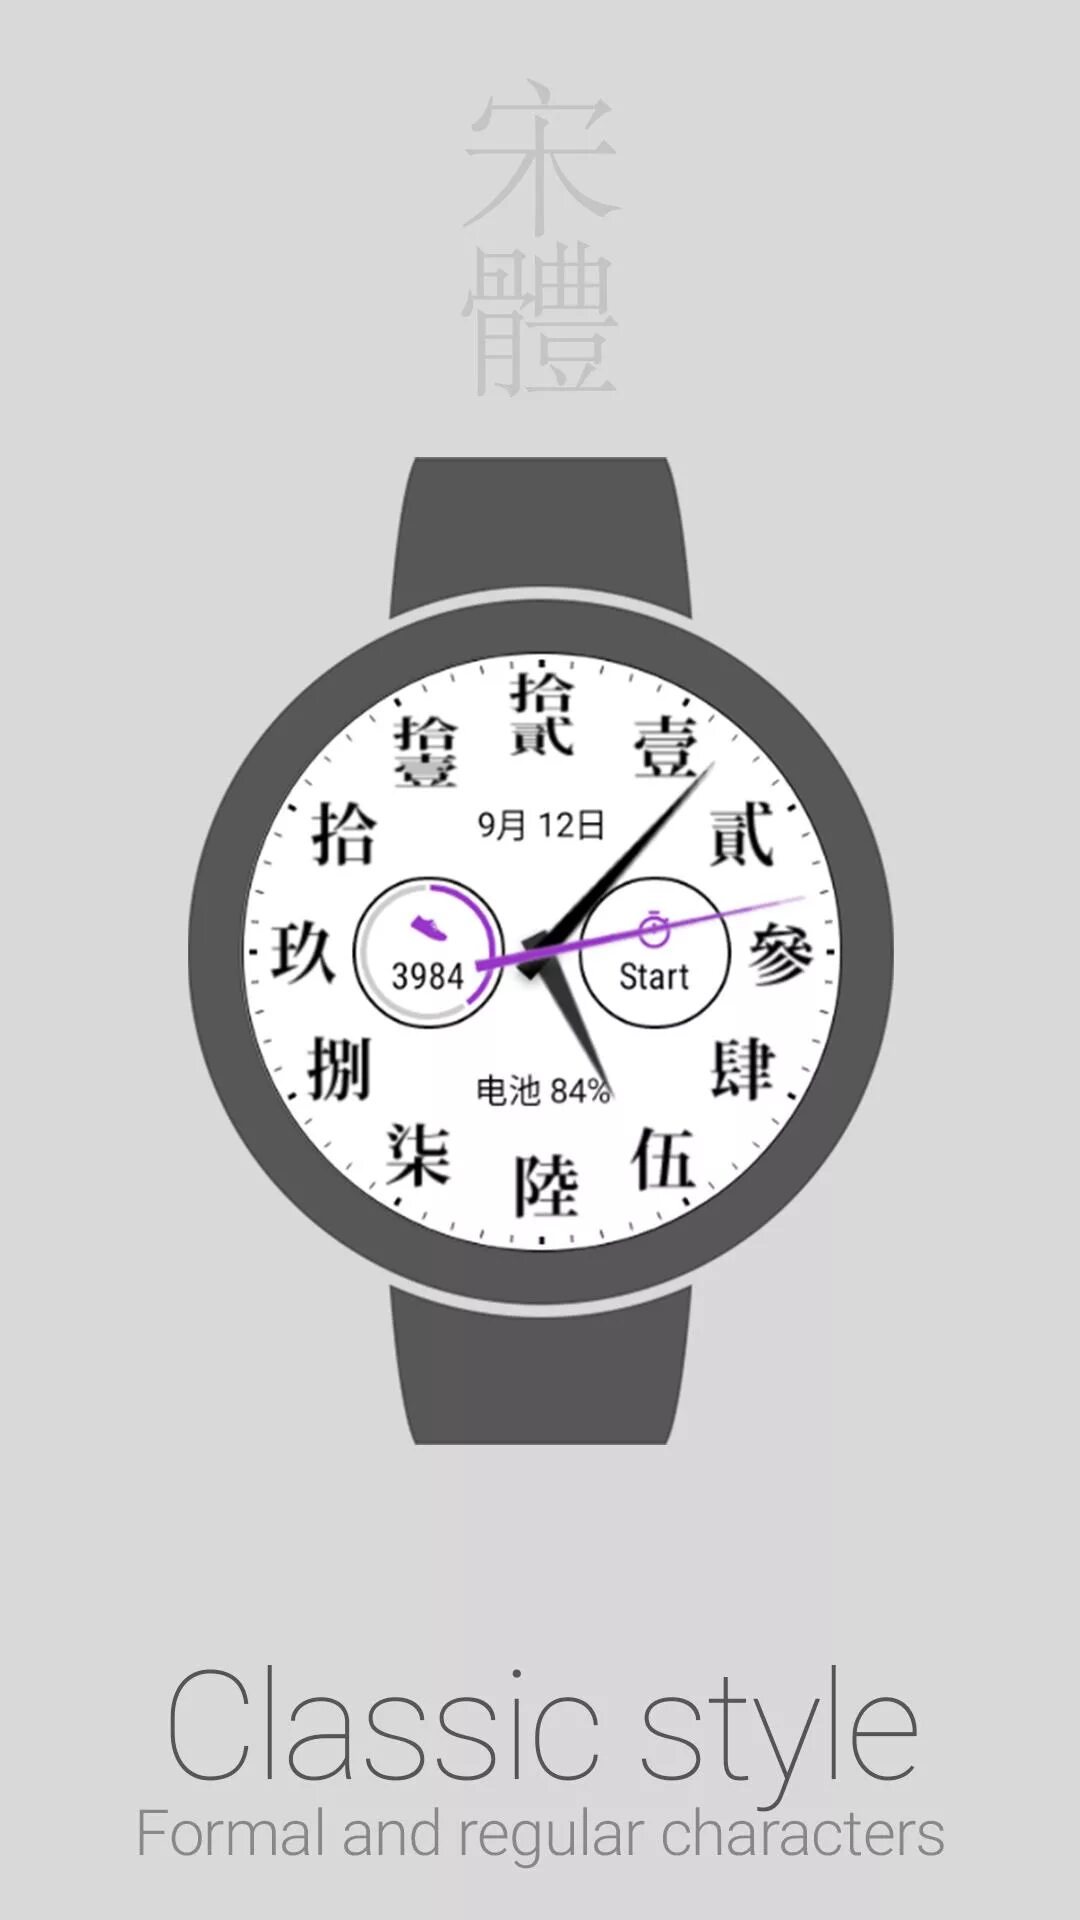 Название часов в китае. Часы с китайскими цифрами. Часы в китайском языке. Эмблемы китайских часов. Циферблат часов Wear os.